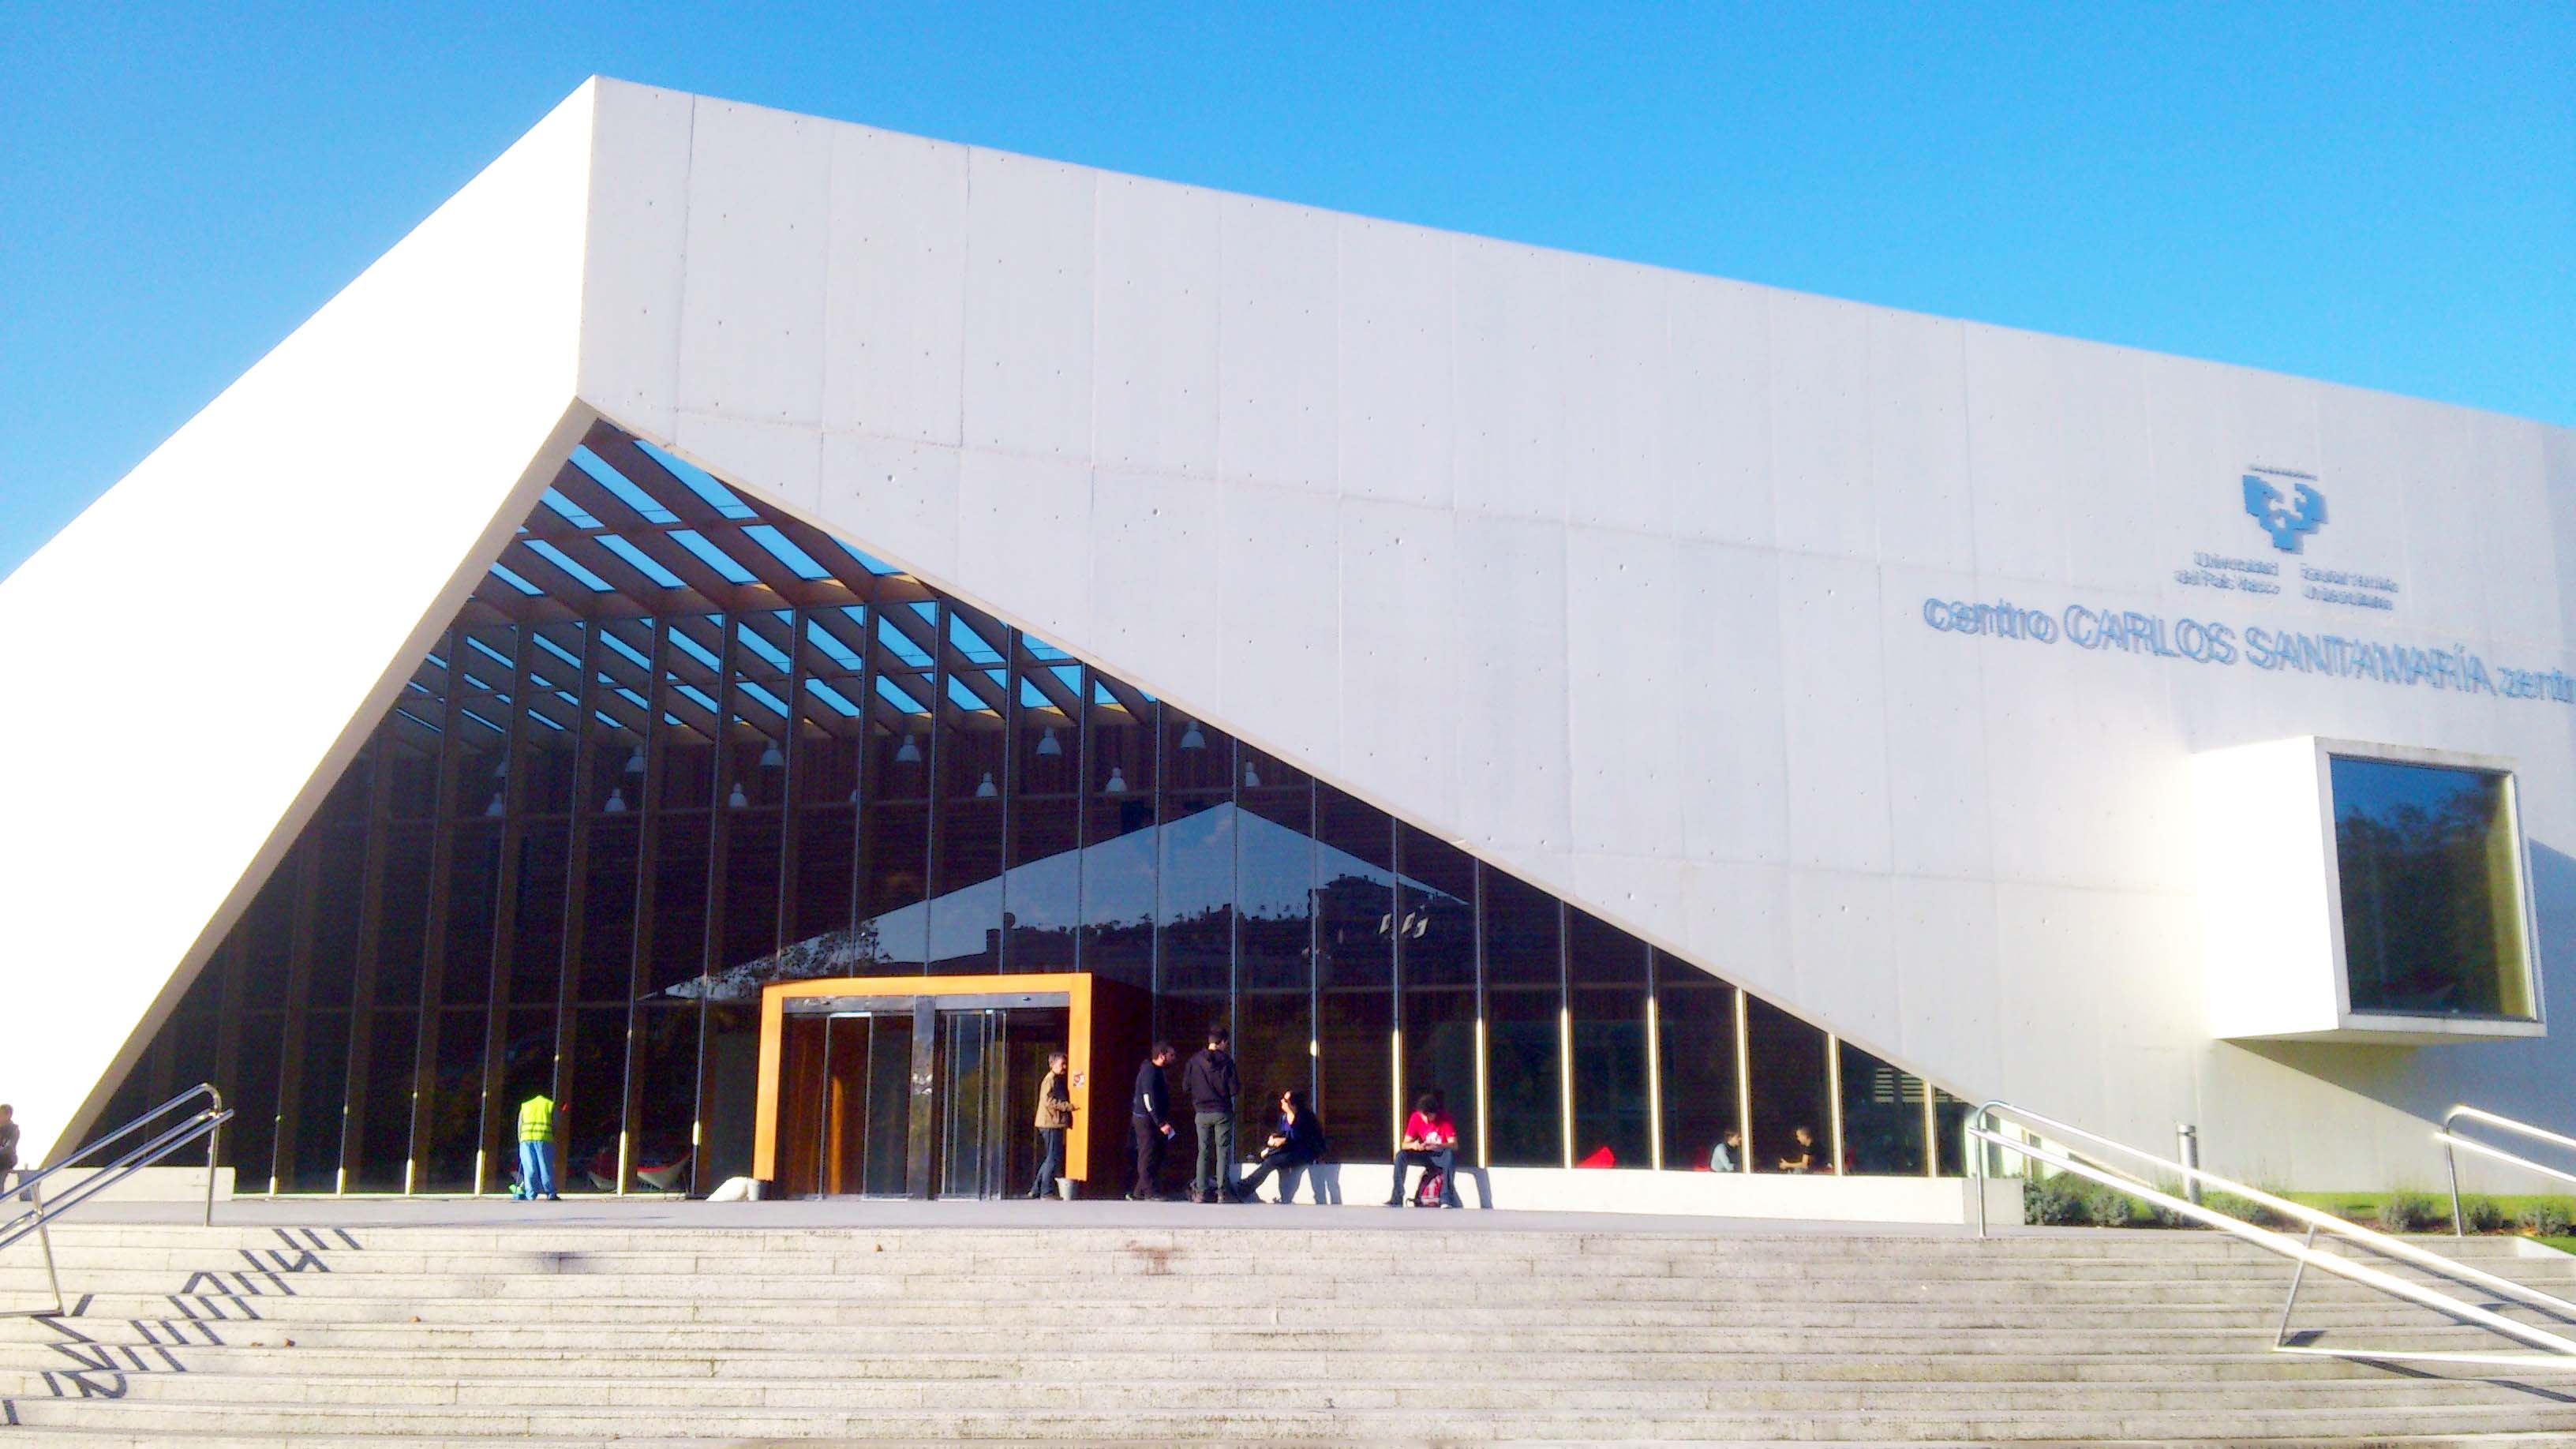 Universidad del País Vasco campus library in San Sebastián, Spain.